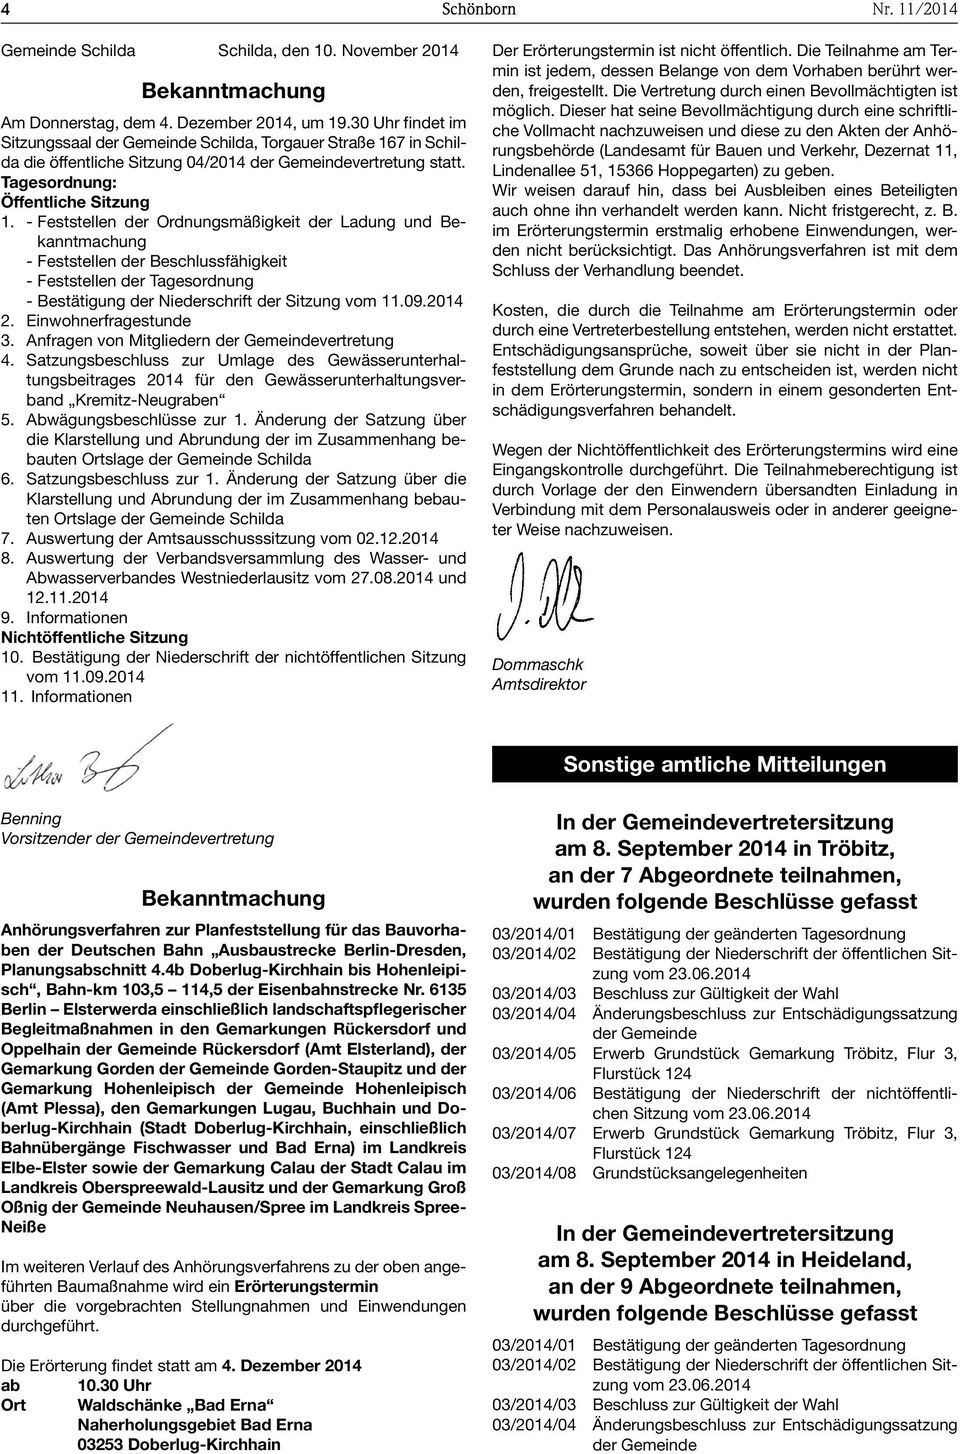 - Feststellen der Ordnungsmäßigkeit der Ladung und - Feststellen der Beschlussfähigkeit - Feststellen der Tagesordnung - Bestätigung der Niederschrift der Sitzung vom 11.09.2014 2.